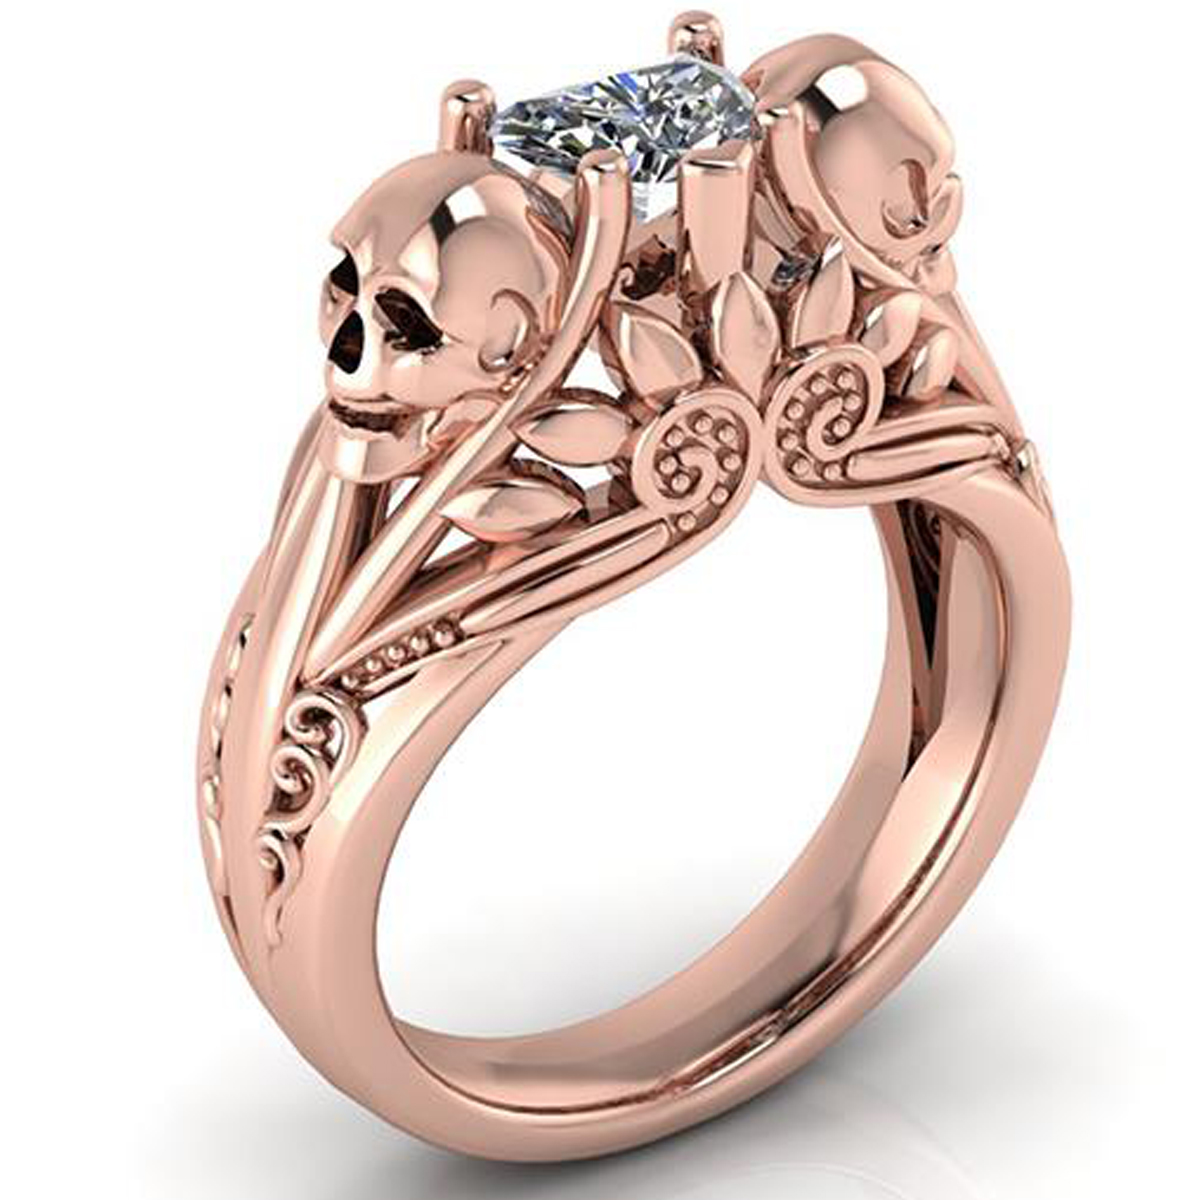 Halo Diamond Skull Wedding Rings Skull Ring Set His Her Couple